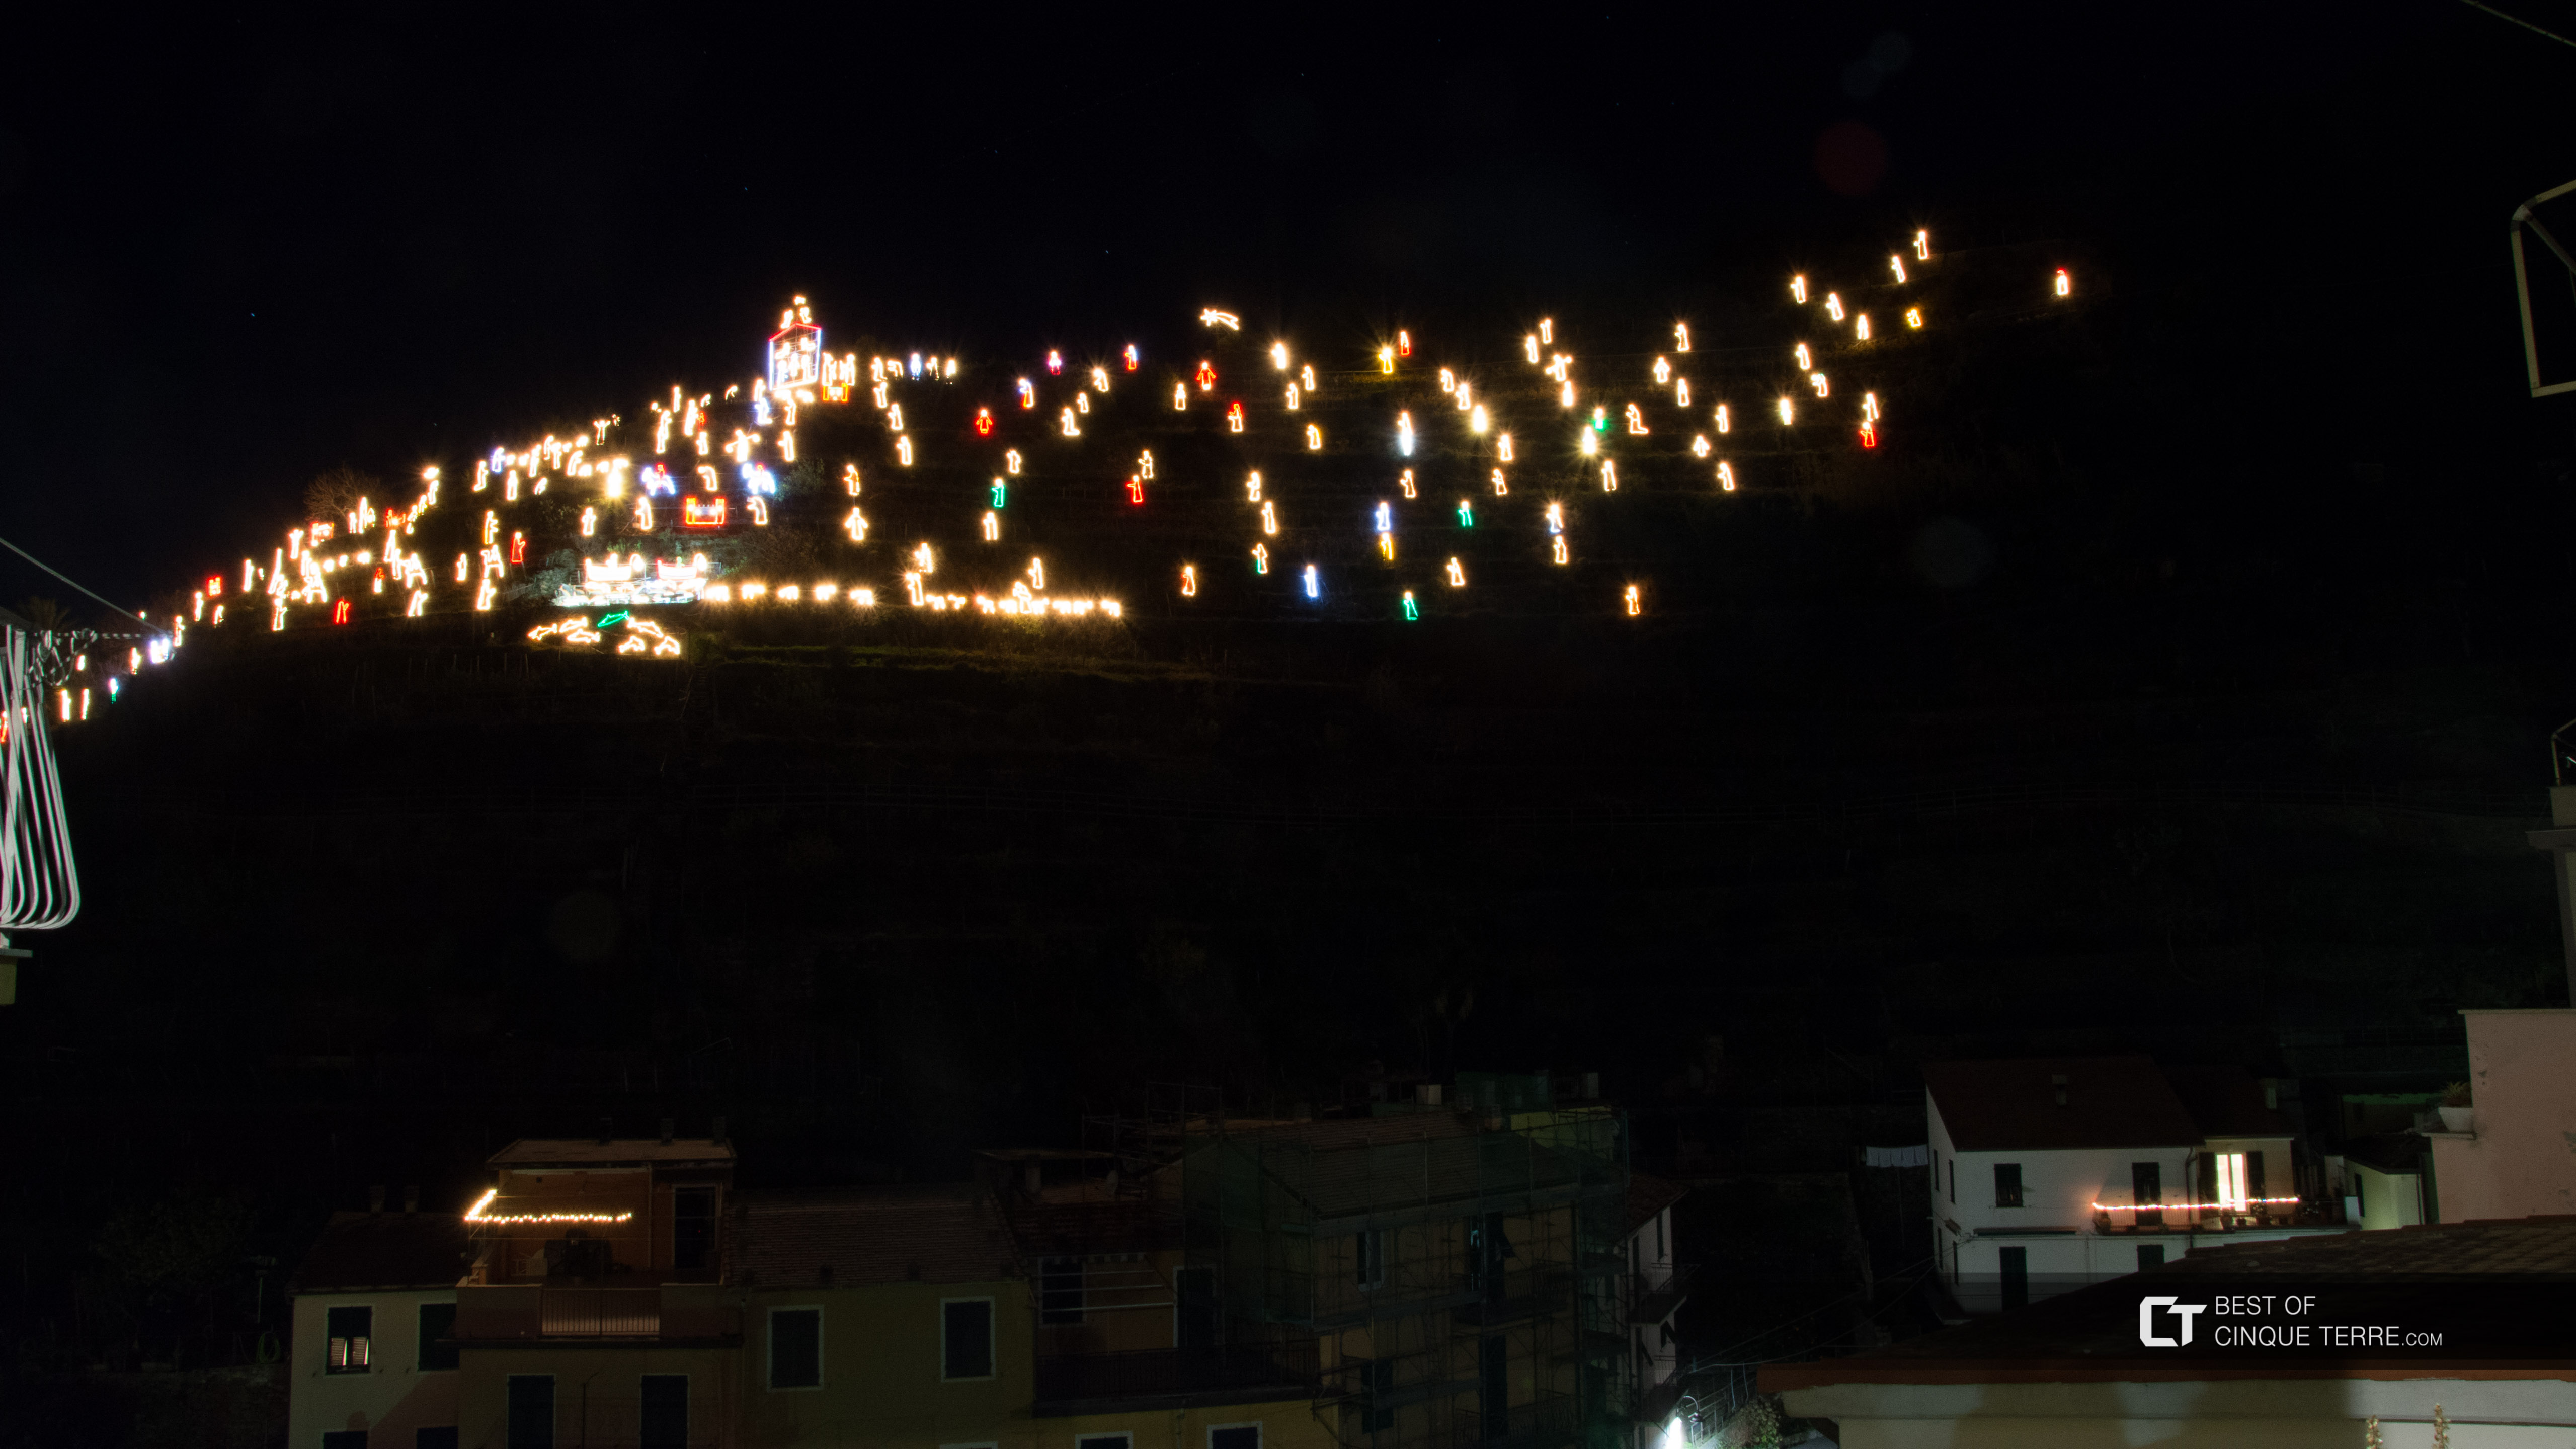 Presepe di Natale, vista dalla piazza centrale del paese, Manarola, Cinque Terre, Italia